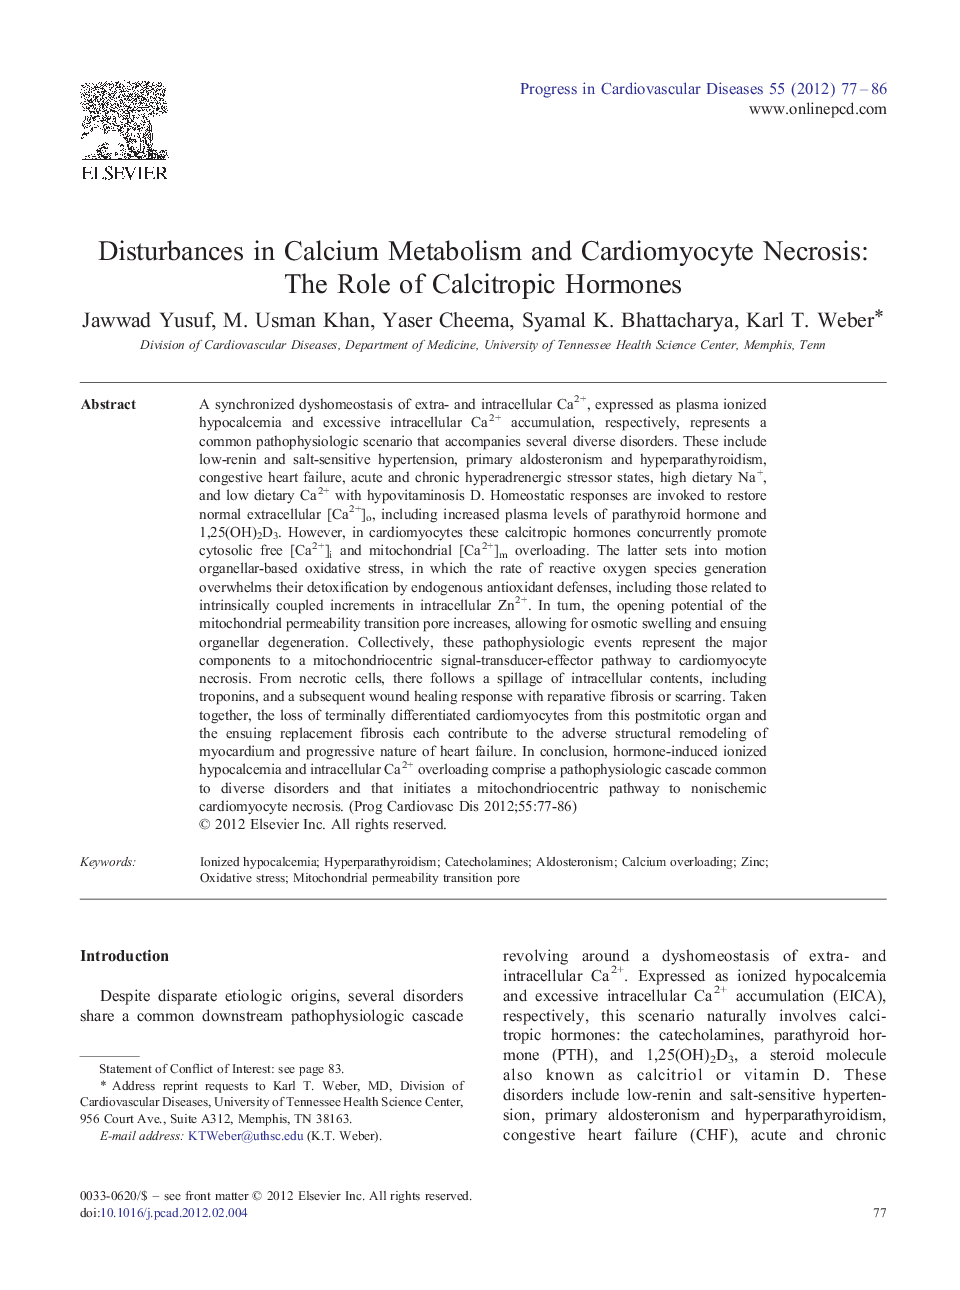 Disturbances in Calcium Metabolism and Cardiomyocyte Necrosis: The Role of Calcitropic Hormones 